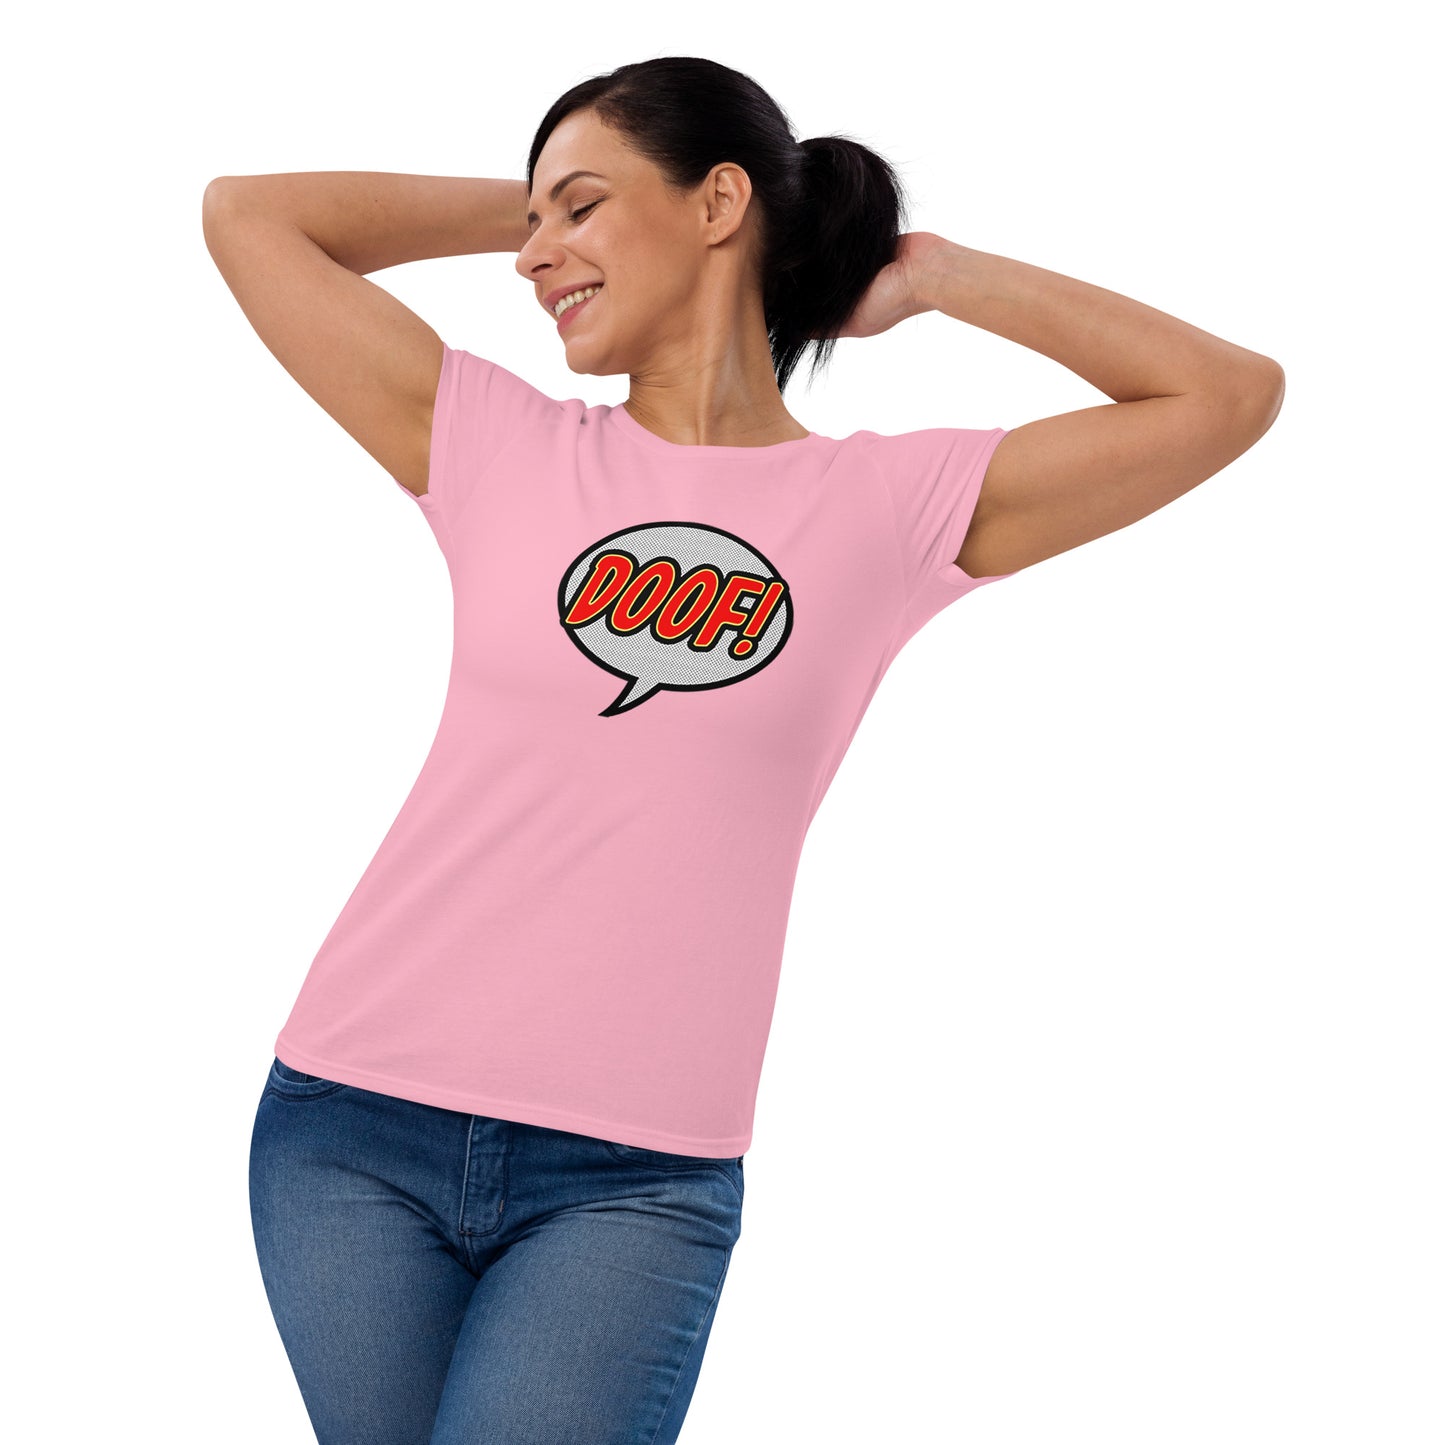 Doof T-Shirt, Women's Fit